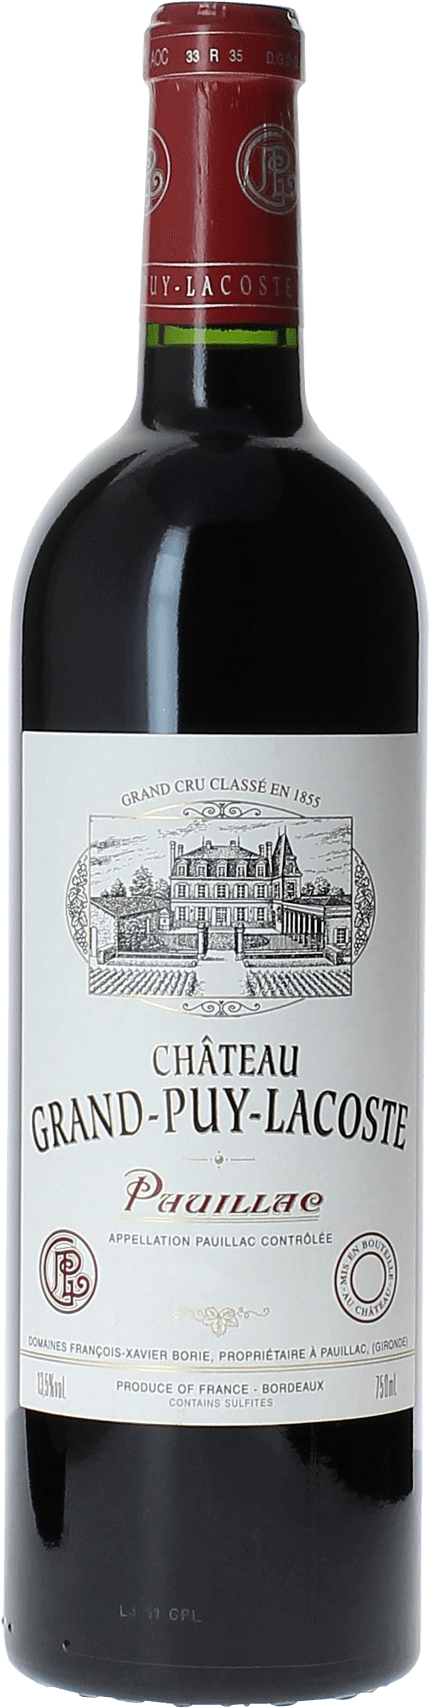 Grand puy lacoste 2019 5 me Grand cru class Pauillac, Bordeaux rouge